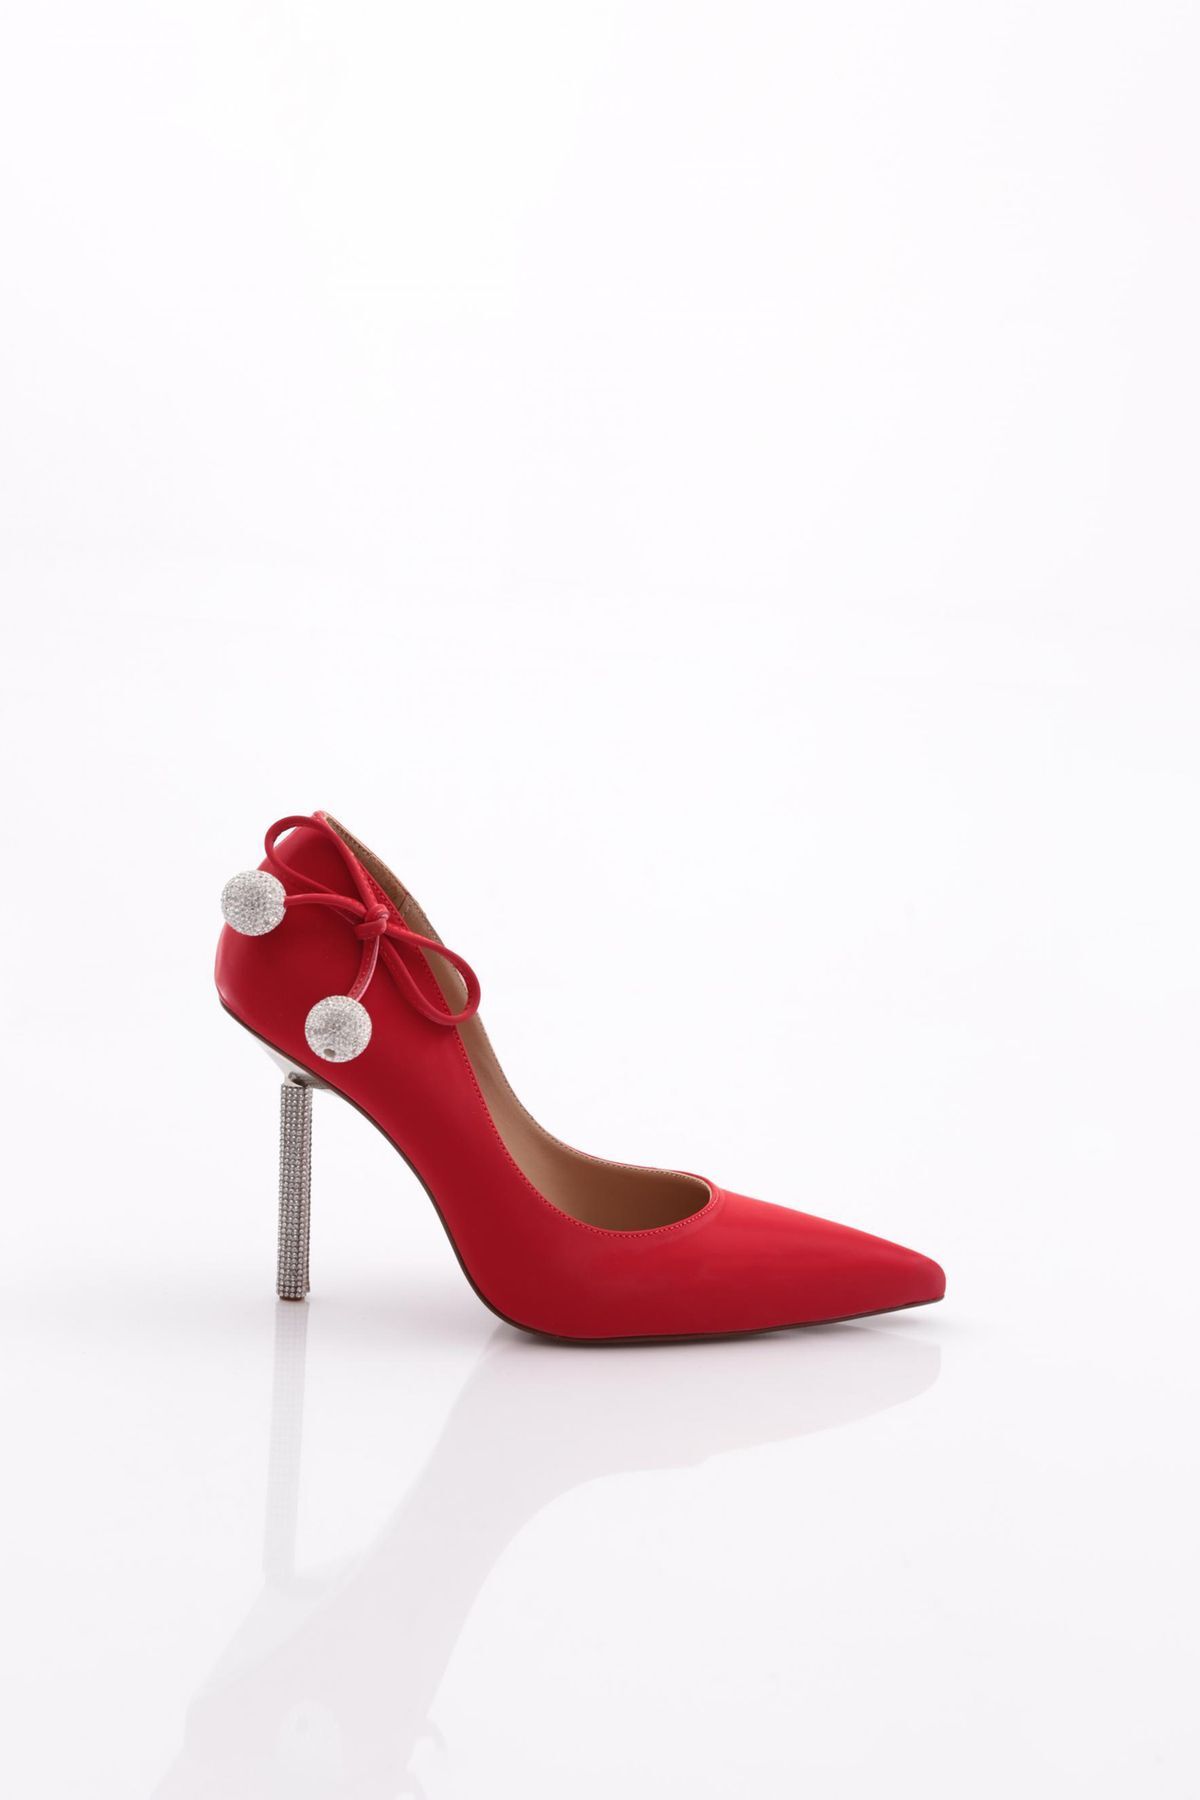 Dgn 4546 Kadın Arkası Kristal Top Süsleme Topuklu Ayakkabı Kırmızı Açma